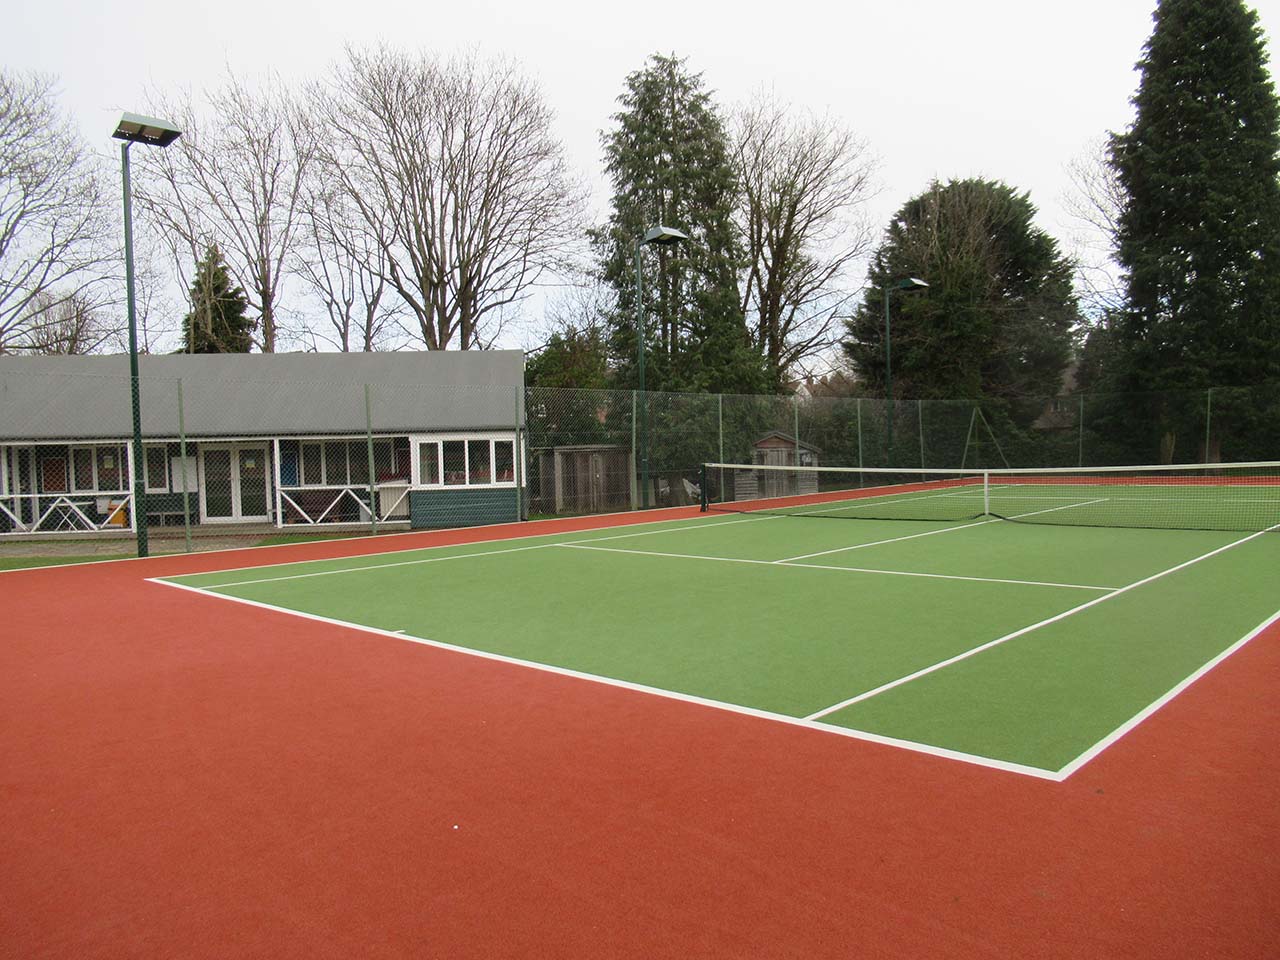 Rickmansworth Lawn Tennis Club